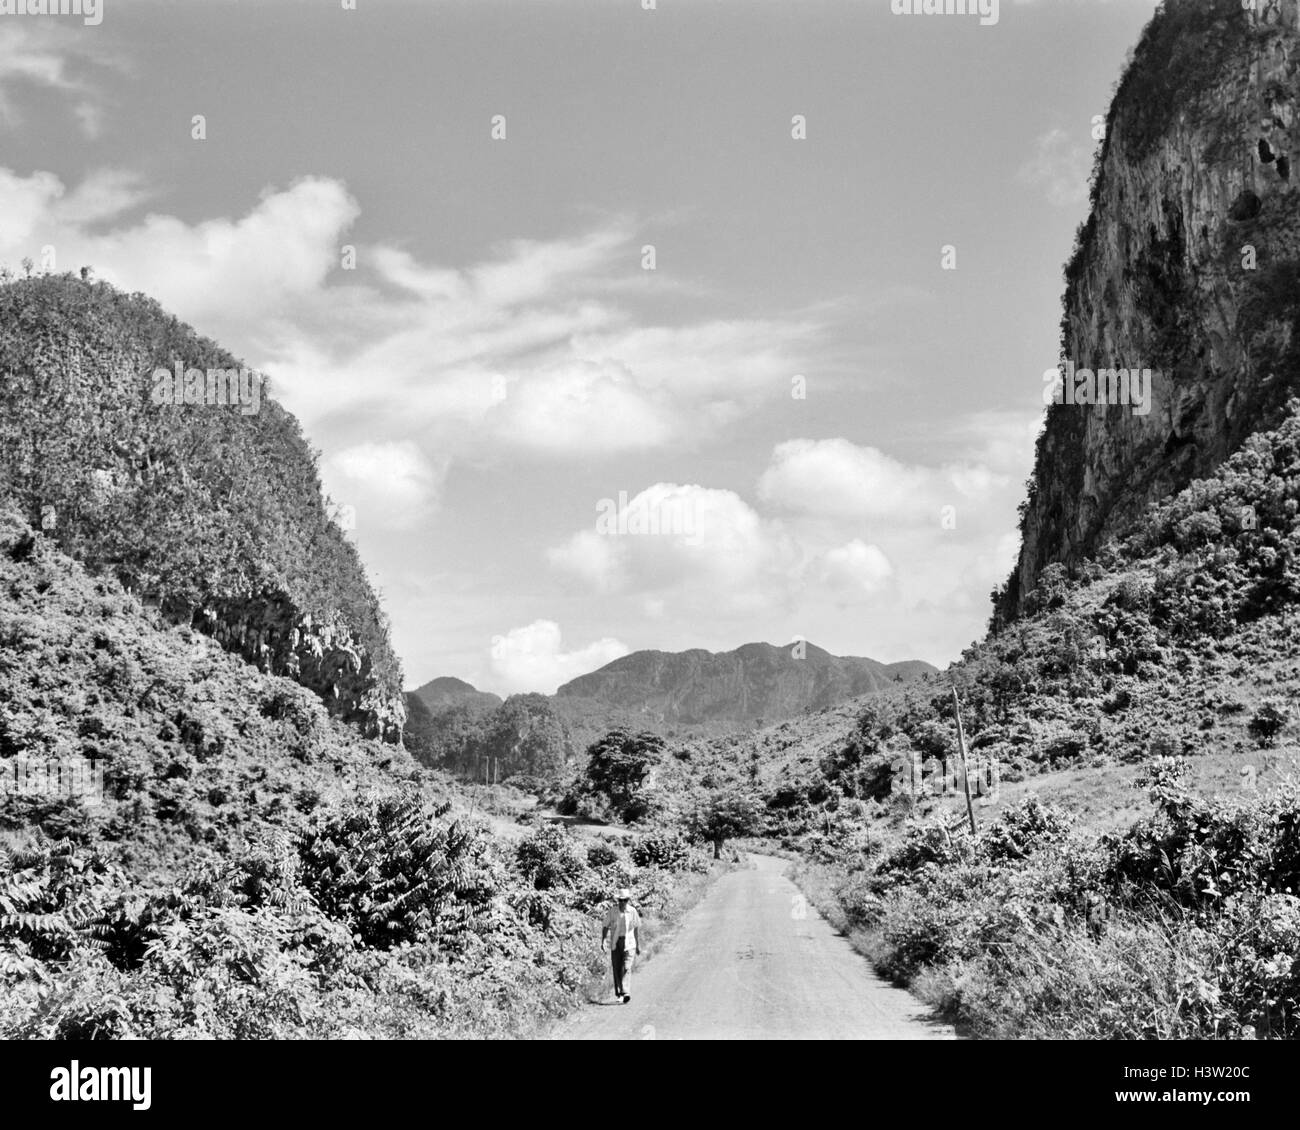 1950 CHEMIN RURAL EN DEHORS DE LA VILLE DE VINALES dans la province de Pinar del Rio CUBA Banque D'Images